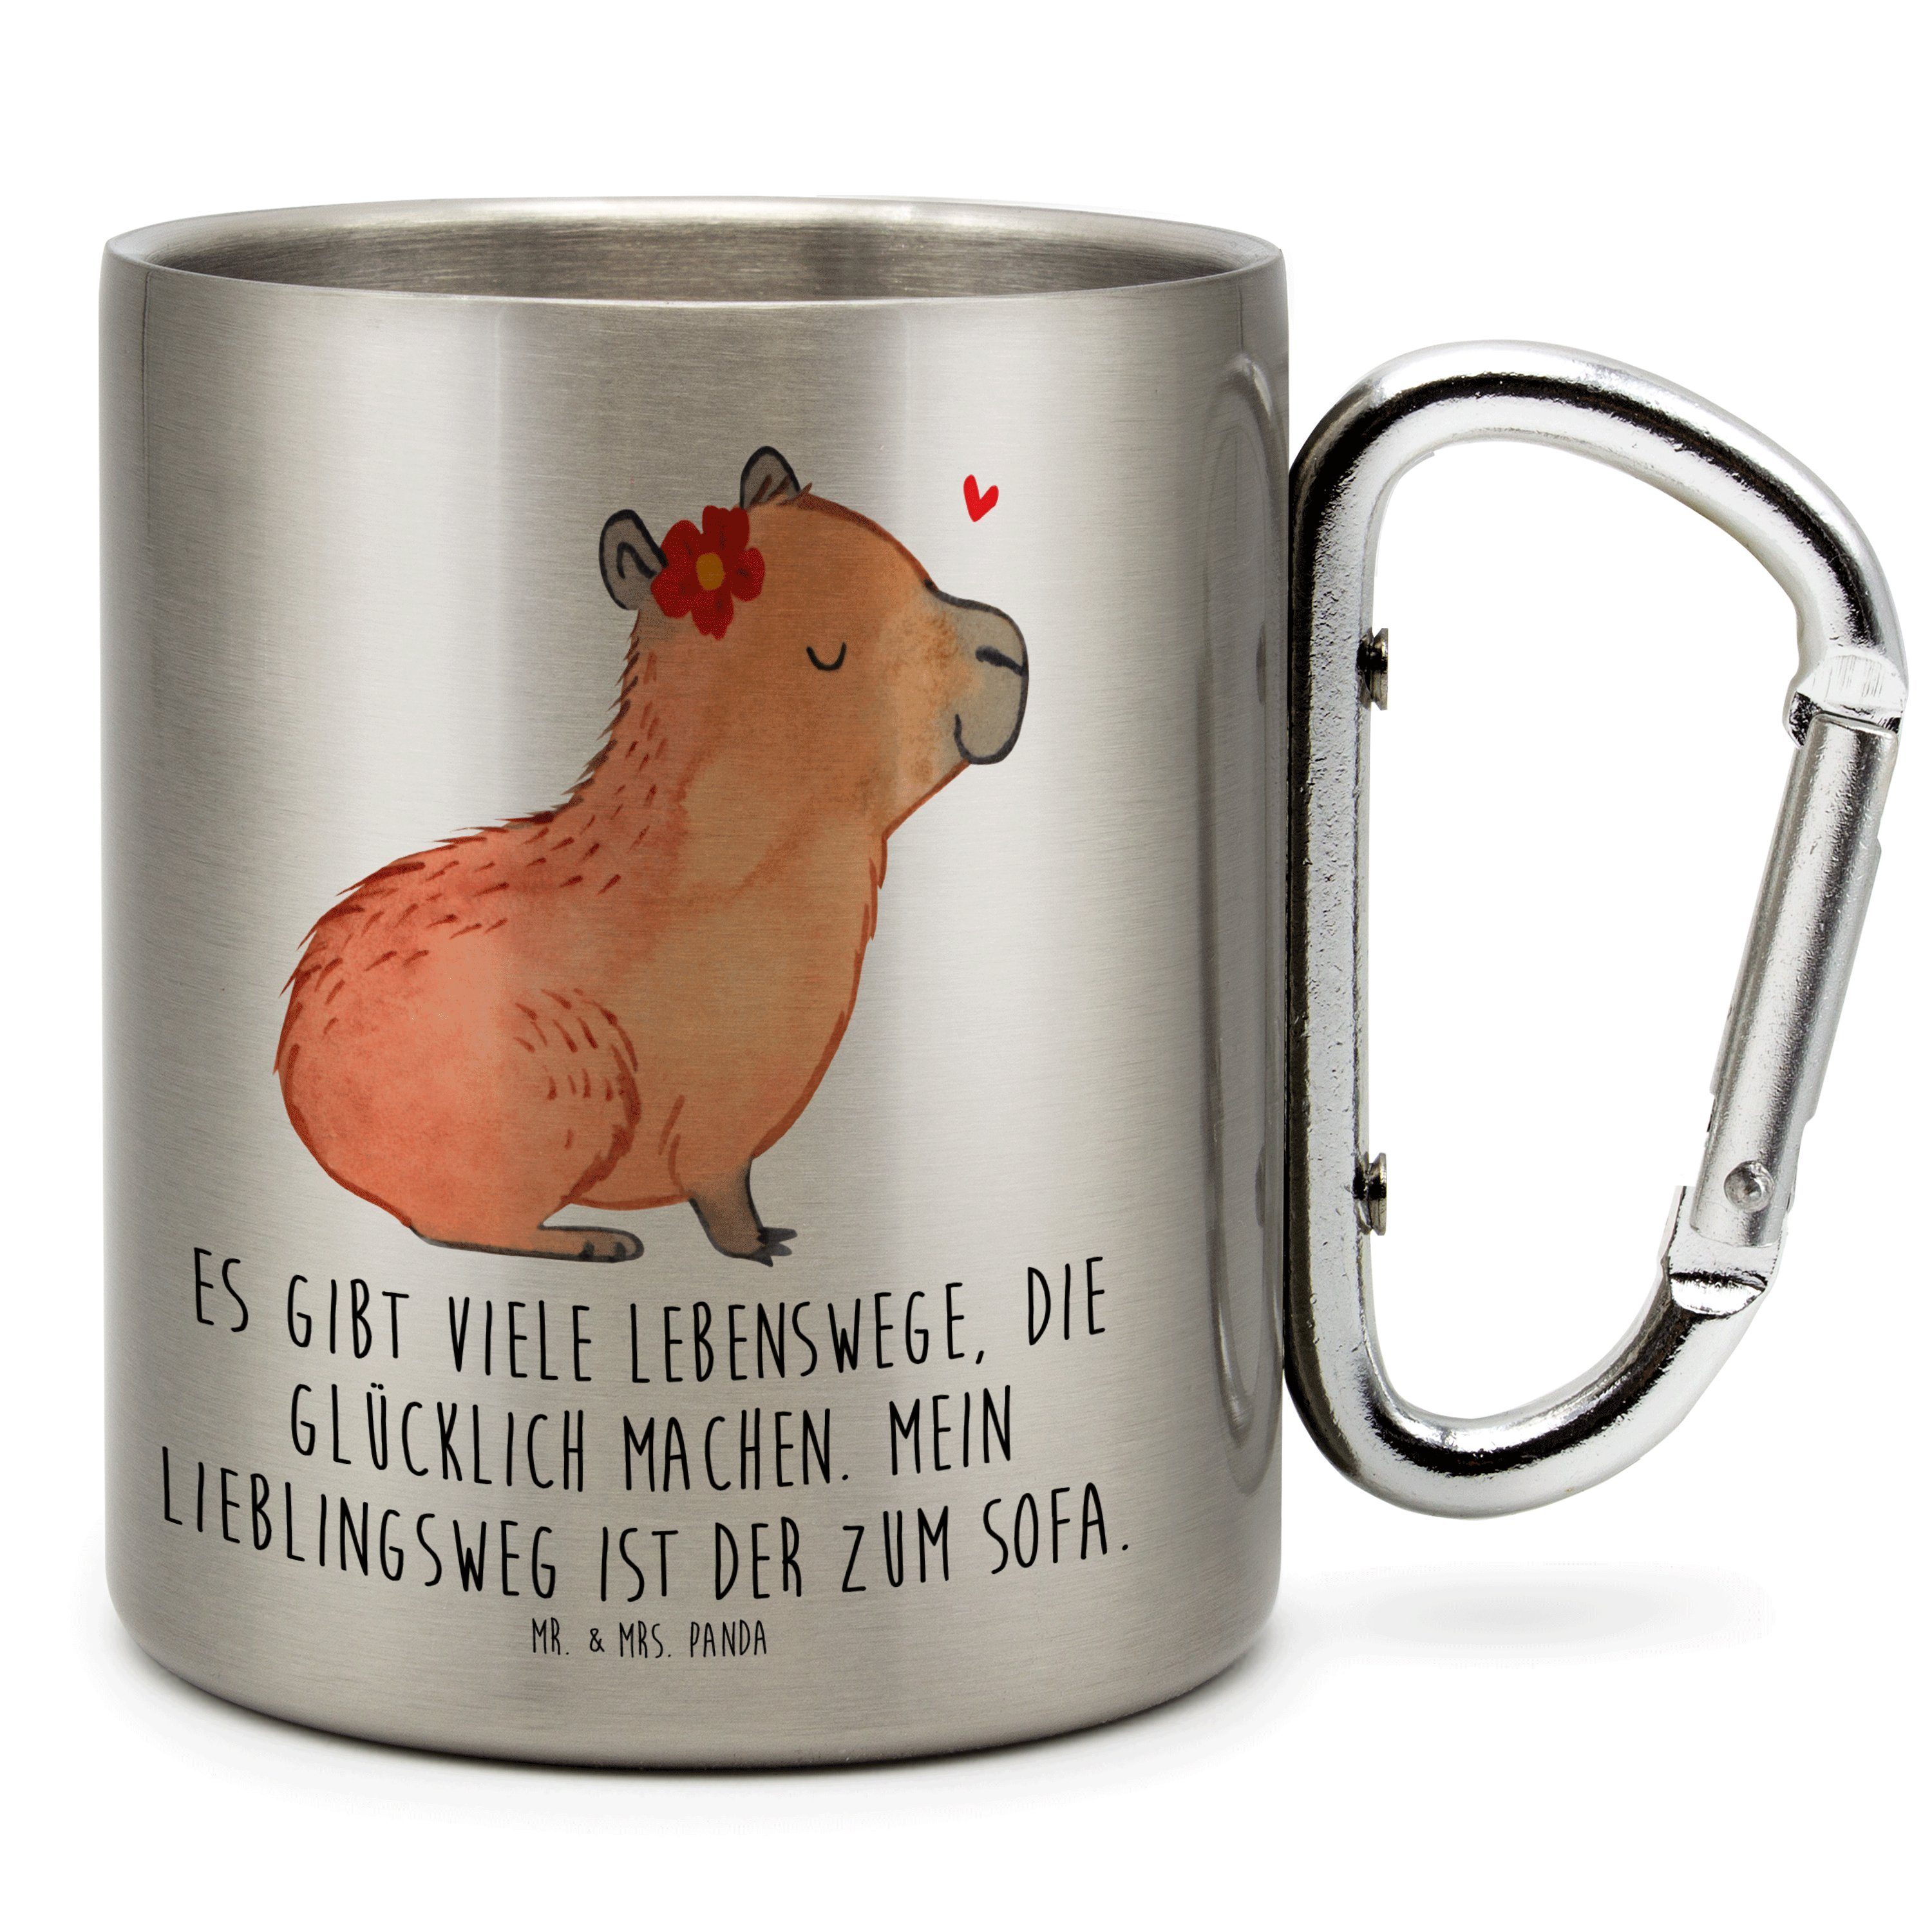 Mr. & Mrs. - Blume Edelstahl - Sprü, Panda Tasse Geschenk, Capybara lustige Edelstahltasse, Transparent